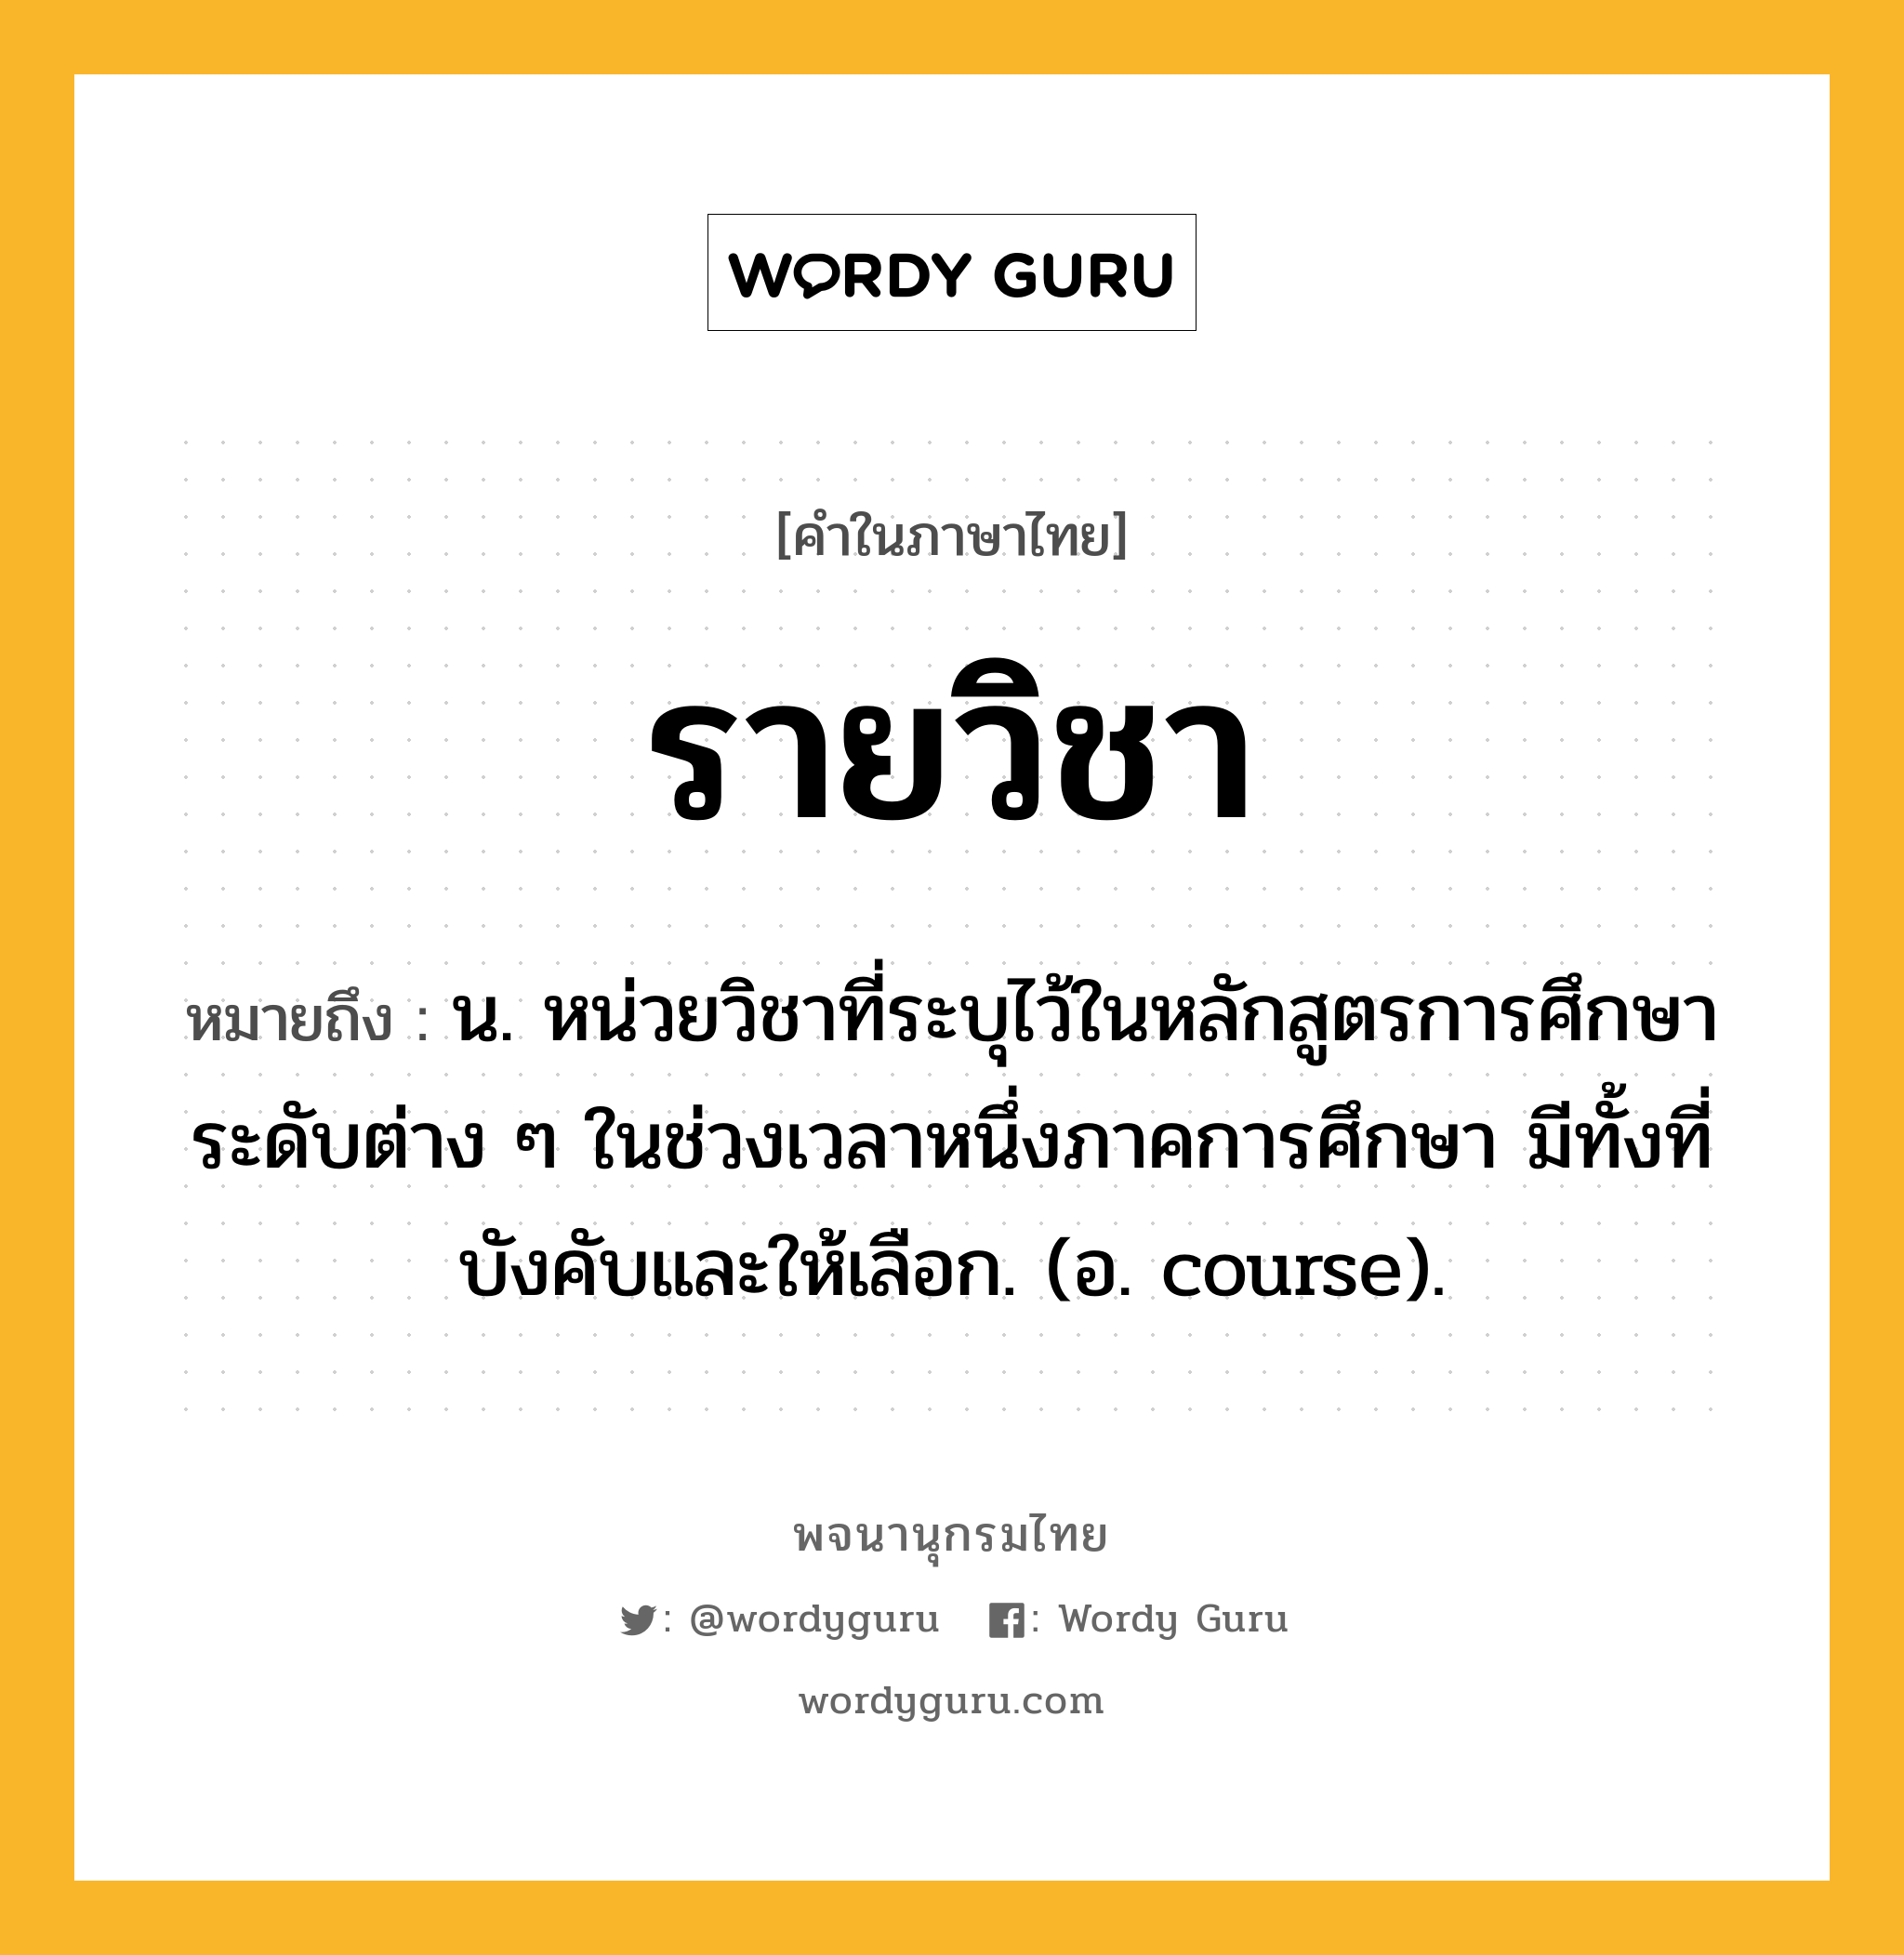 รายวิชา ความหมาย หมายถึงอะไร?, คำในภาษาไทย รายวิชา หมายถึง น. หน่วยวิชาที่ระบุไว้ในหลักสูตรการศึกษาระดับต่าง ๆ ในช่วงเวลาหนึ่งภาคการศึกษา มีทั้งที่บังคับและให้เลือก. (อ. course).